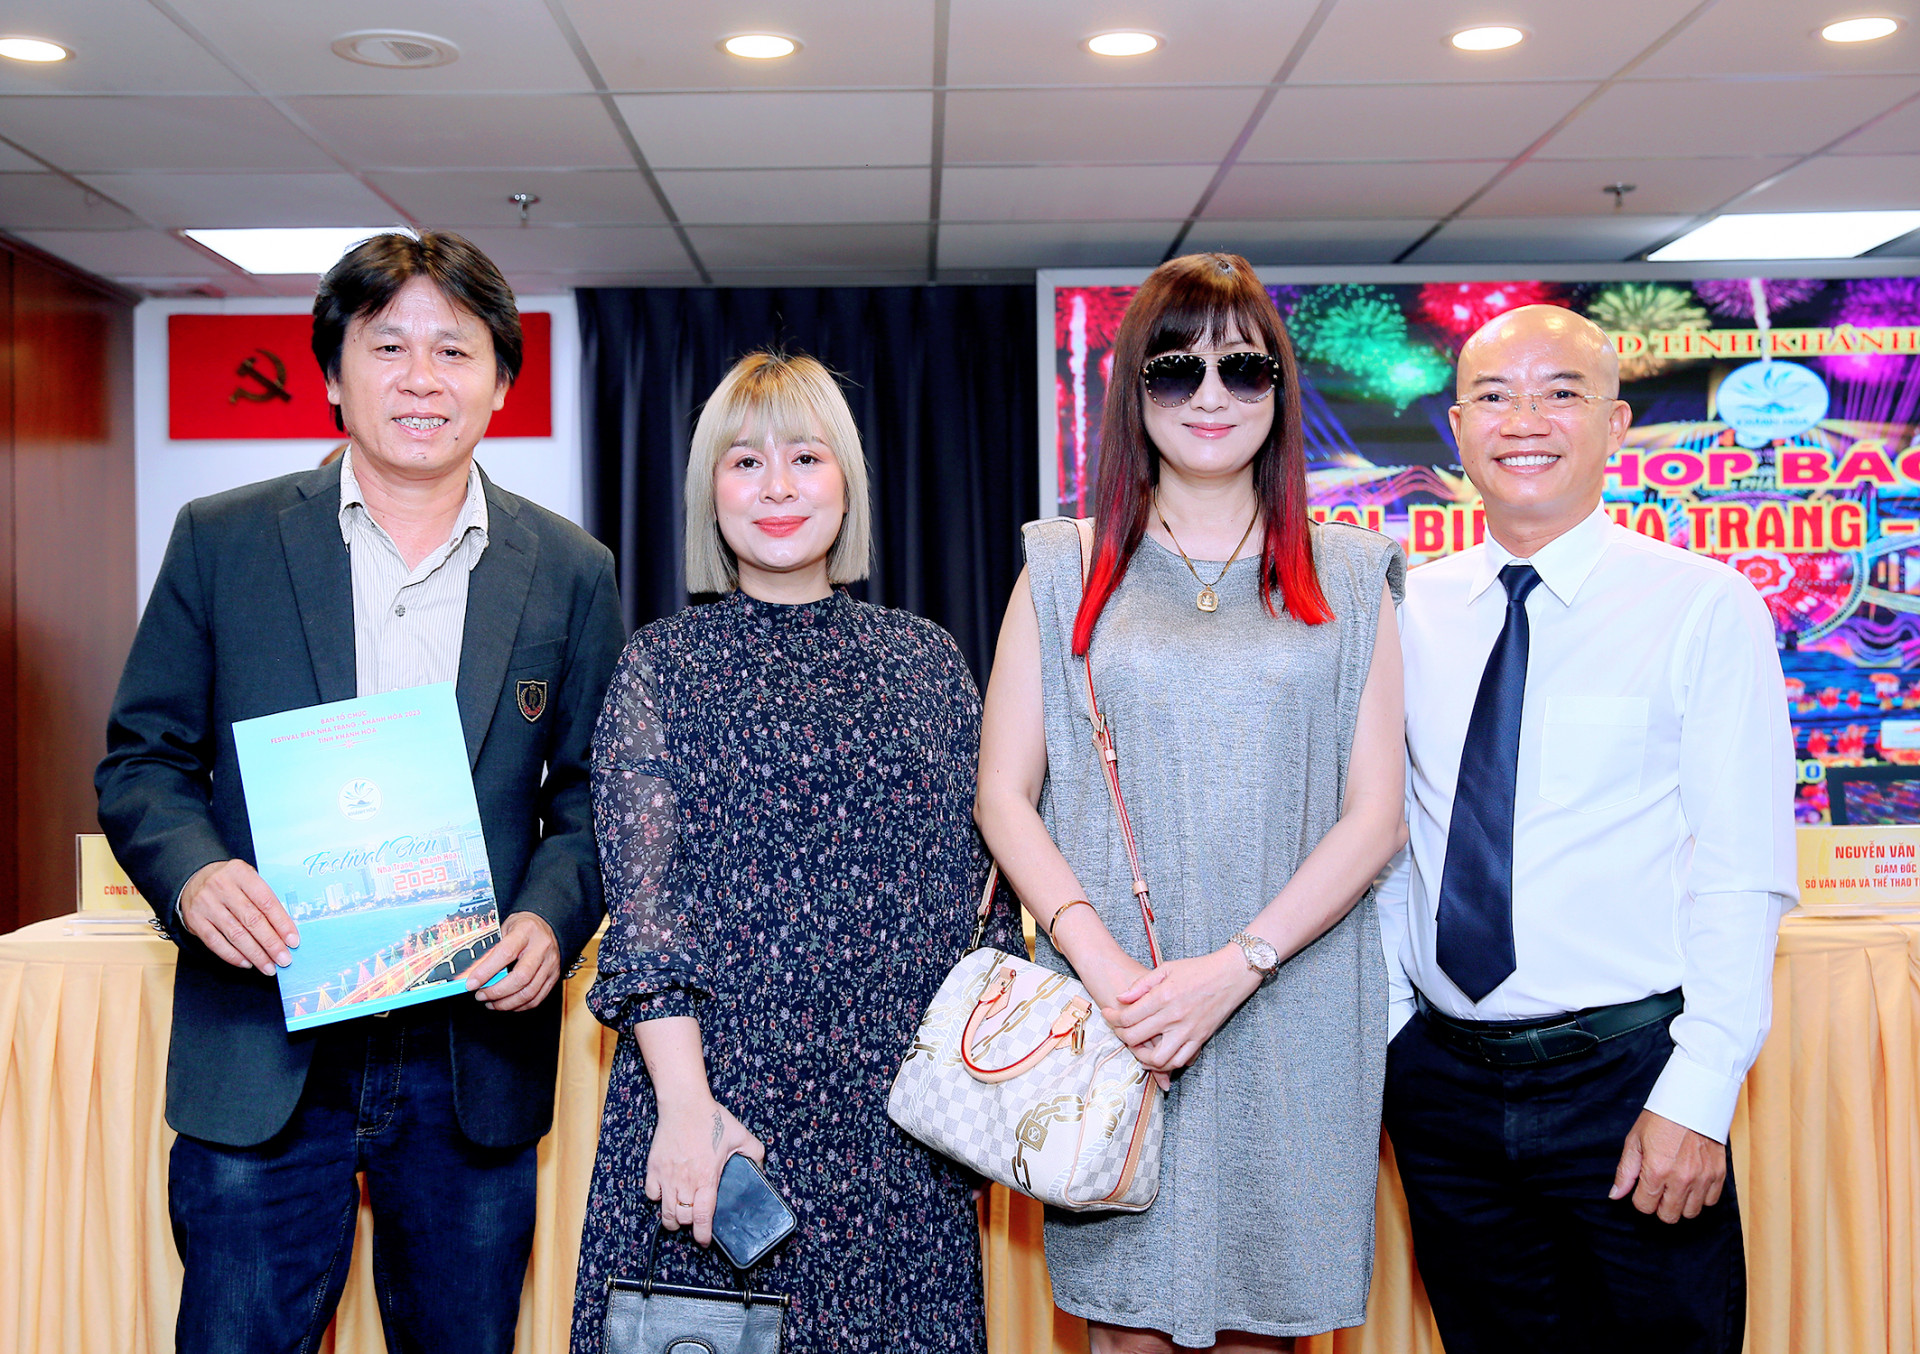 Ba người con của Khánh Hòa gồm ông Kiều Văn Sinh (bìa phải), đạo diễn Khoa Nguyễn (bìa trái) và chị Nguyễn Thị Thu Vân (thứ 2 từ trái qua) trong buổi họp báo giới thiệu Festival Biển 2023 tại TP. Hồ Chí Minh.

